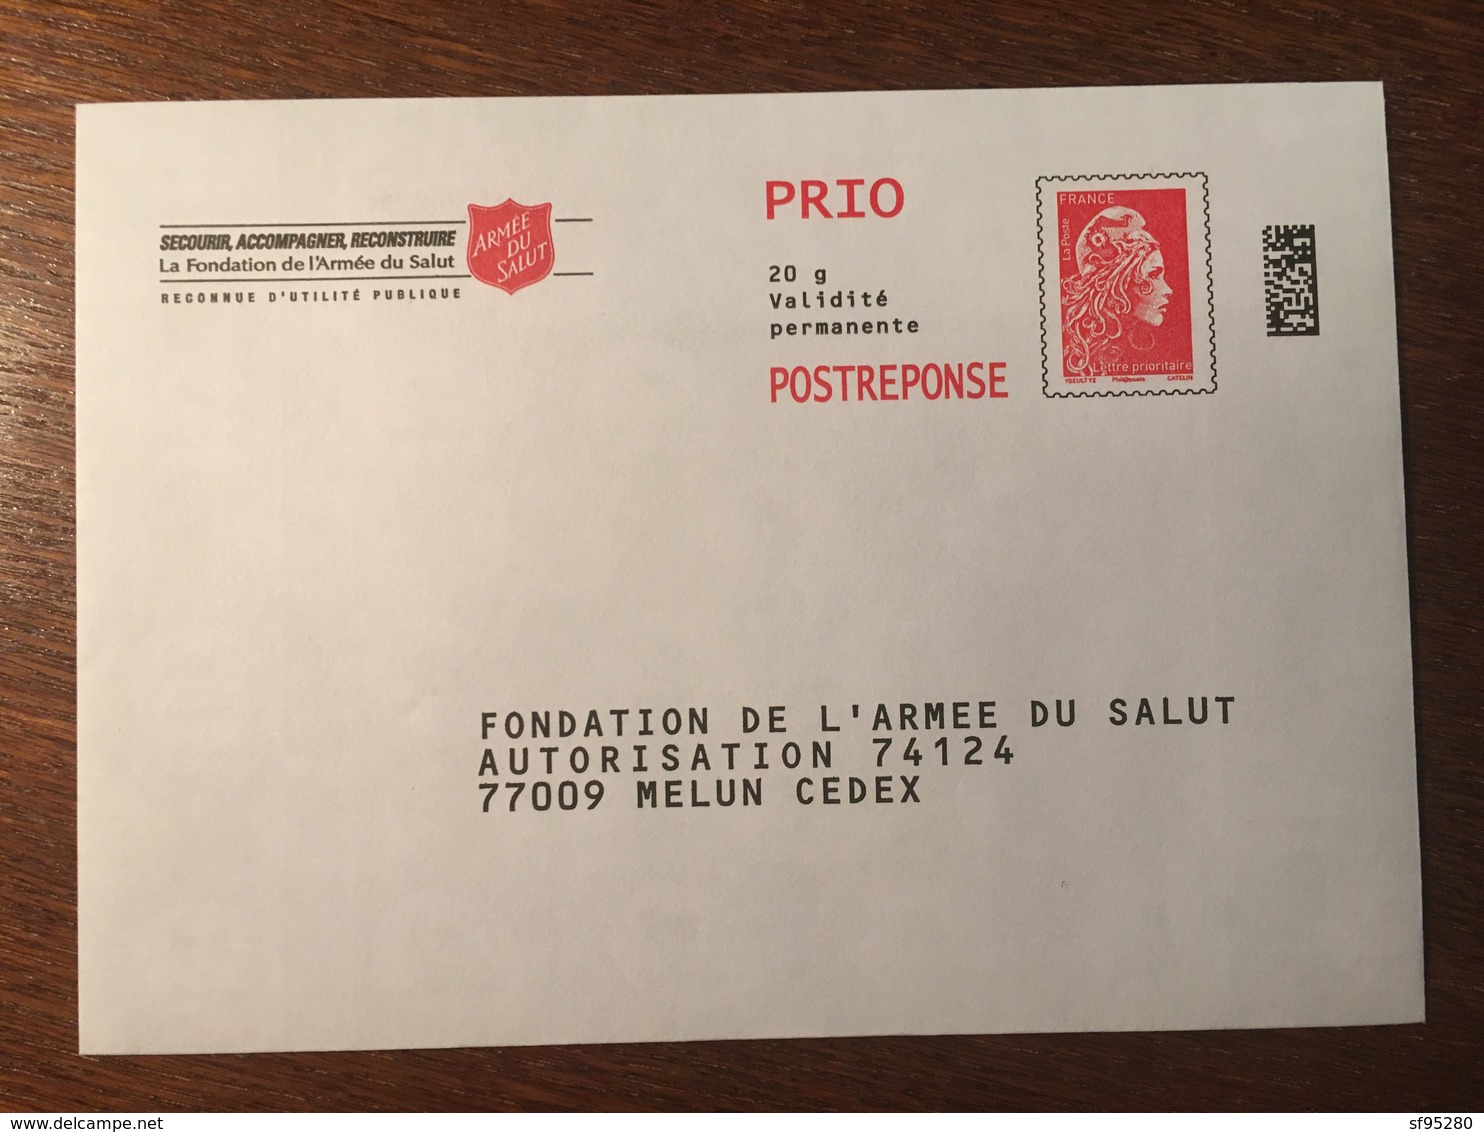 PAP REPONSE FONDATION DE L'ARMEE DU SALUT 204377 - Prêts-à-poster:reply